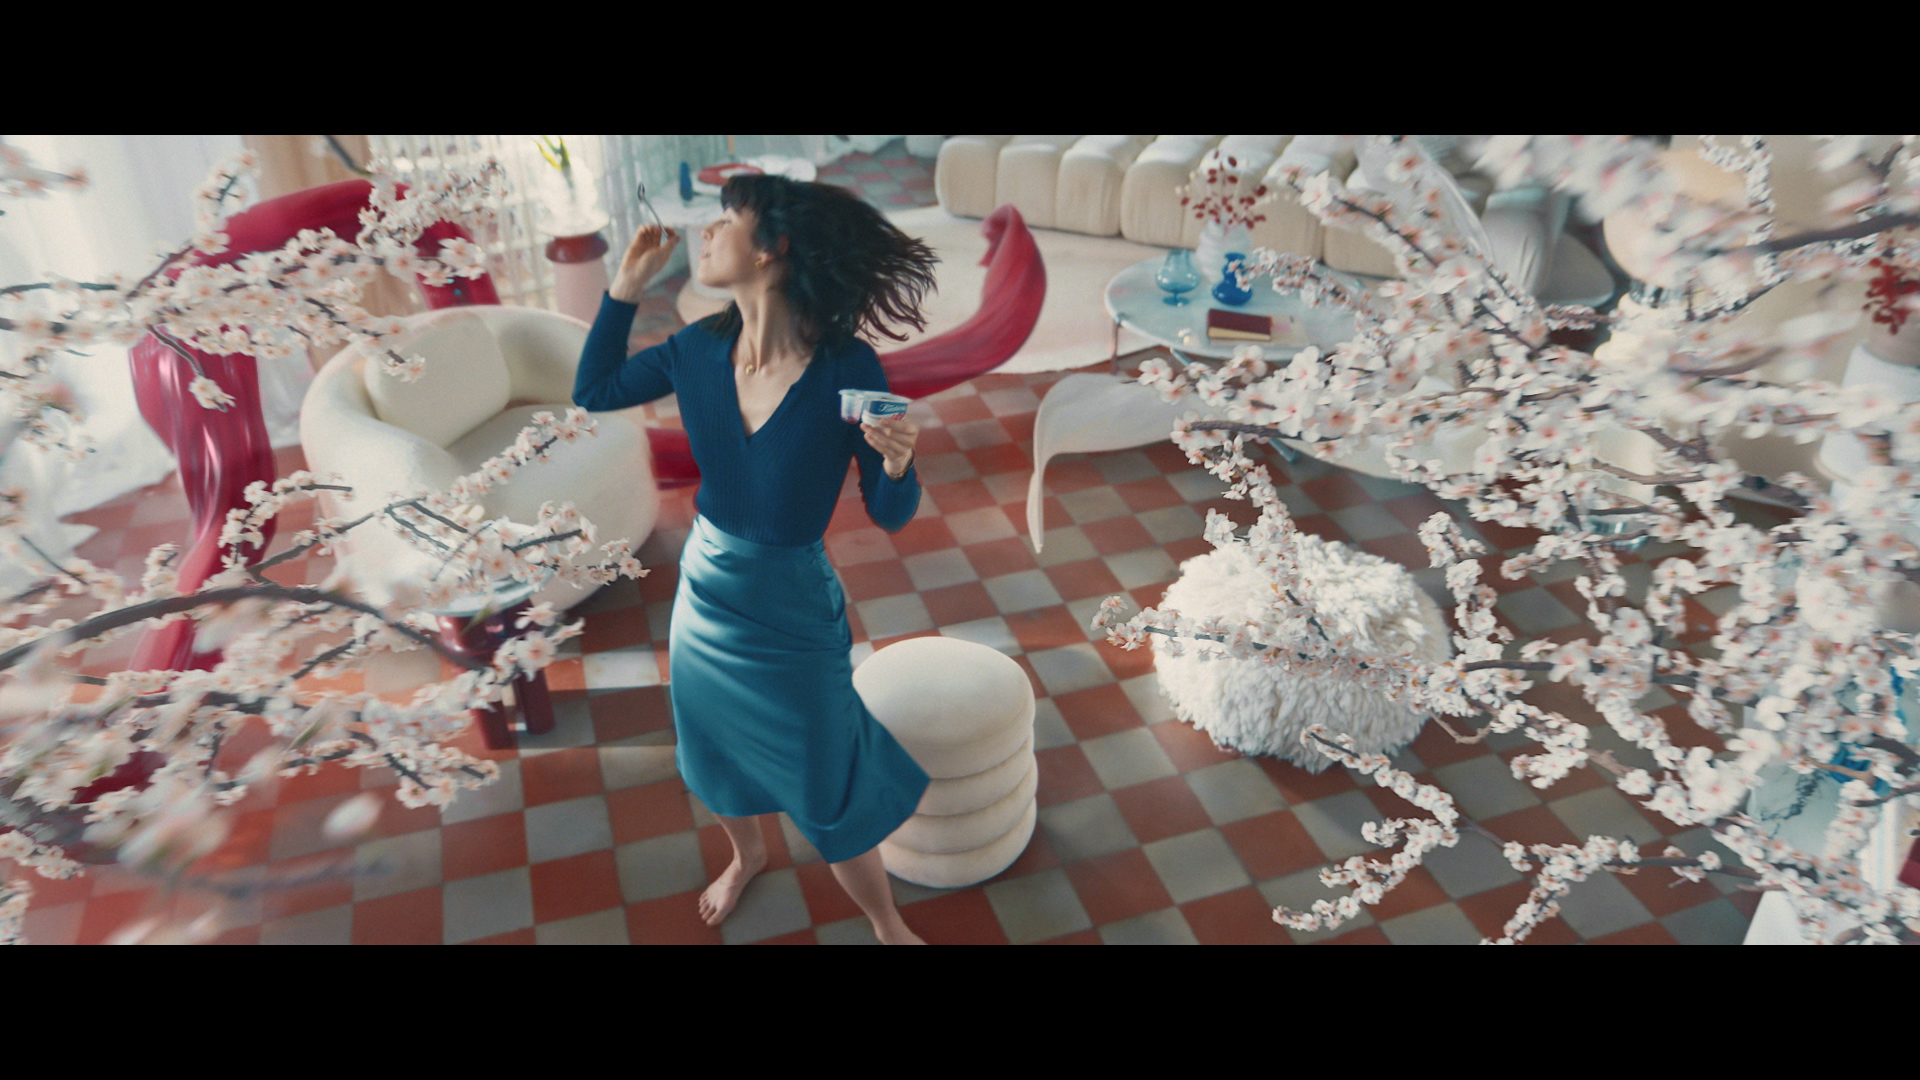 Kadr z reklamy Fantasia